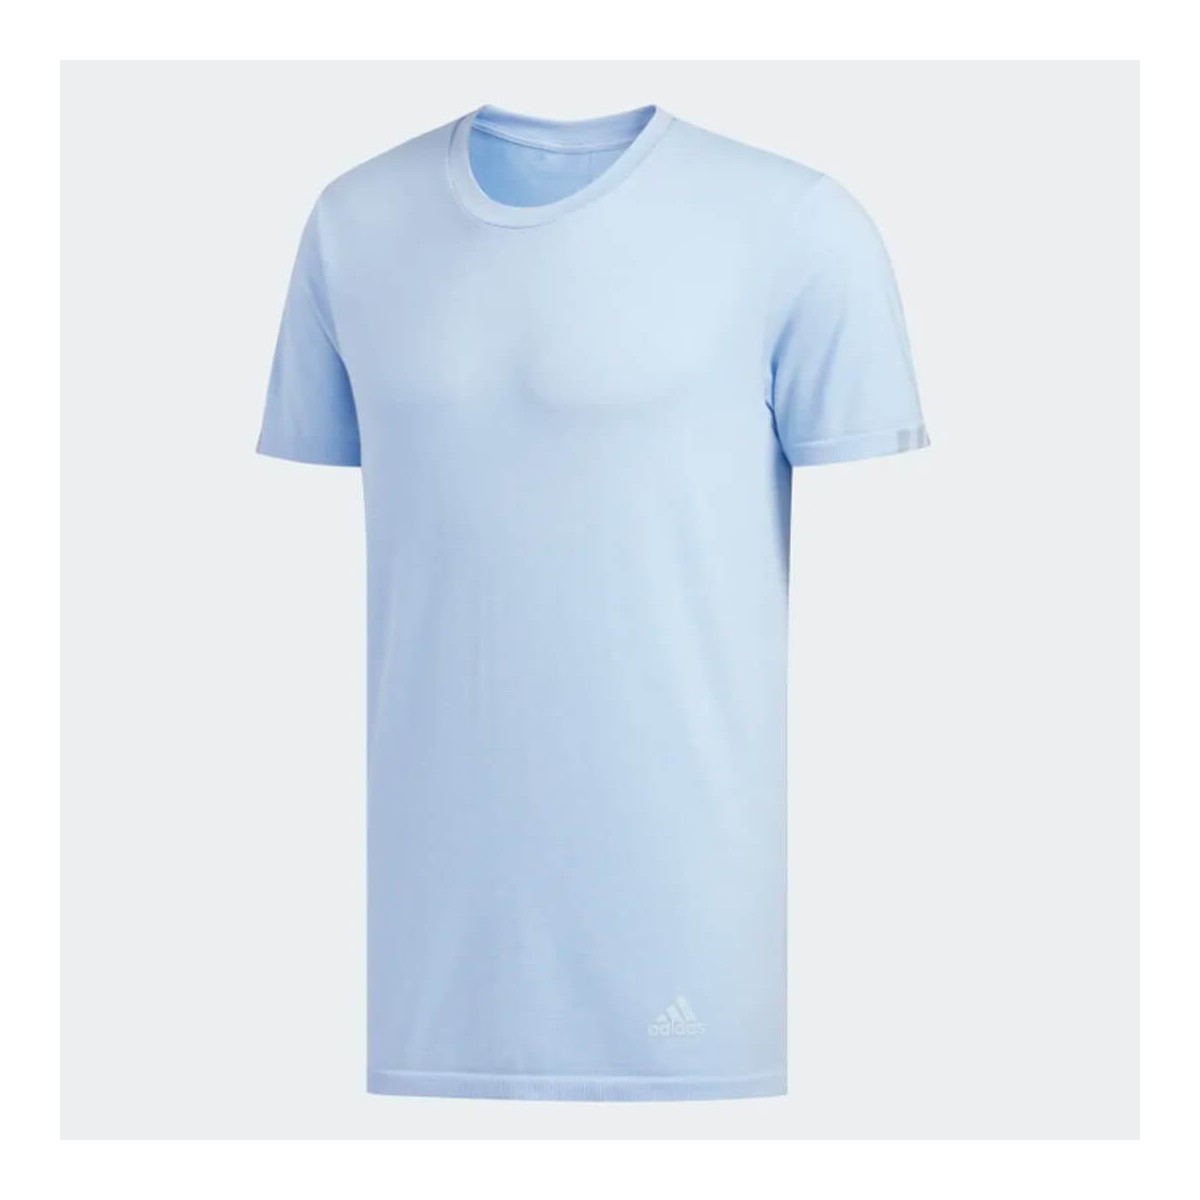 Adidas 25/7 Running Shirt Light Blue Man